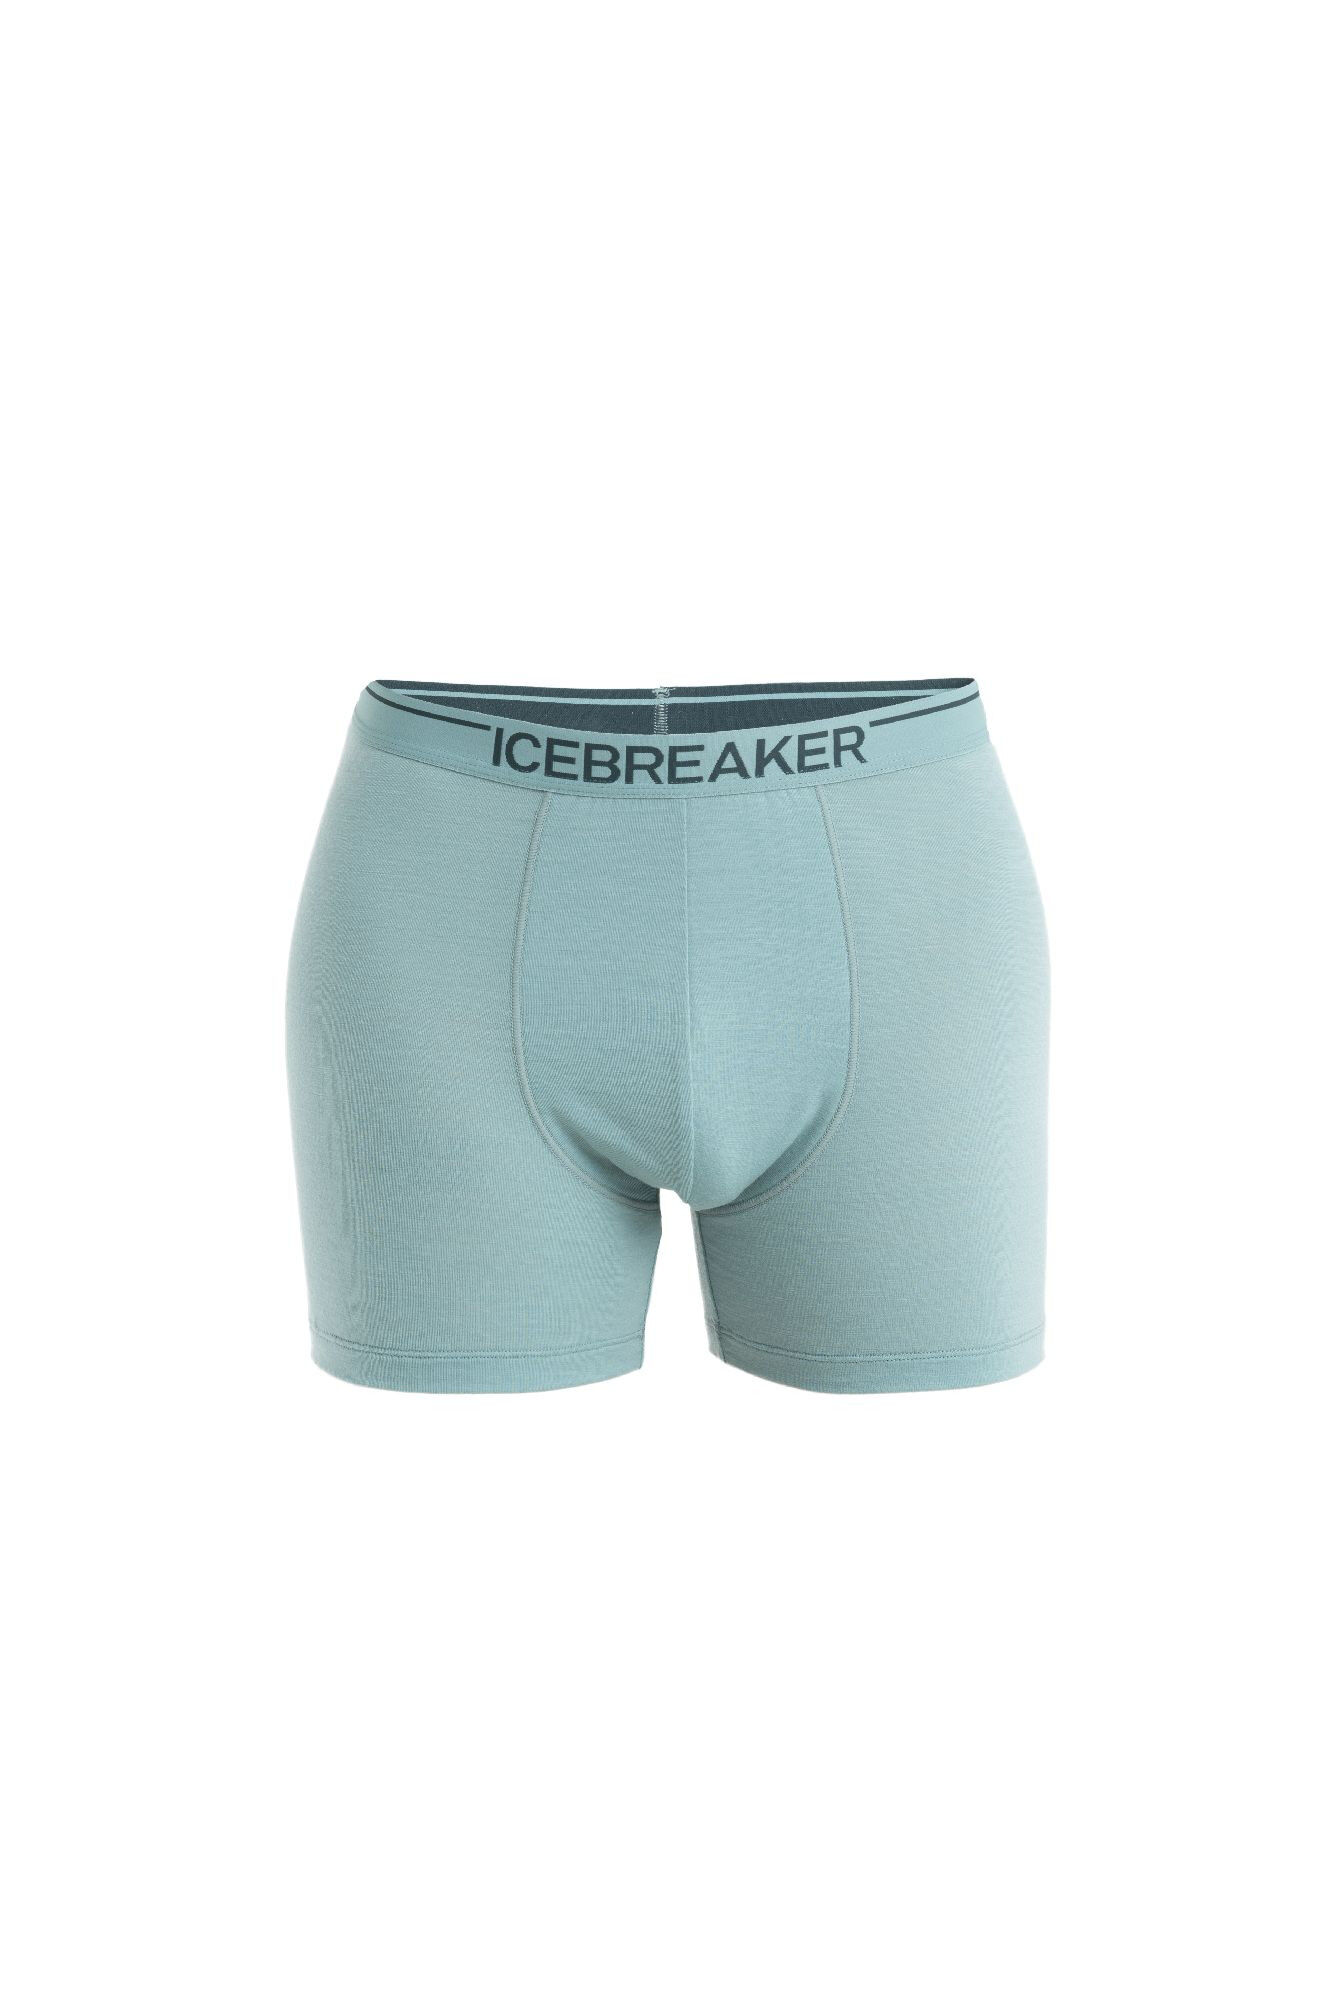 Icebreaker Anatomica Boxers - Underbyxa